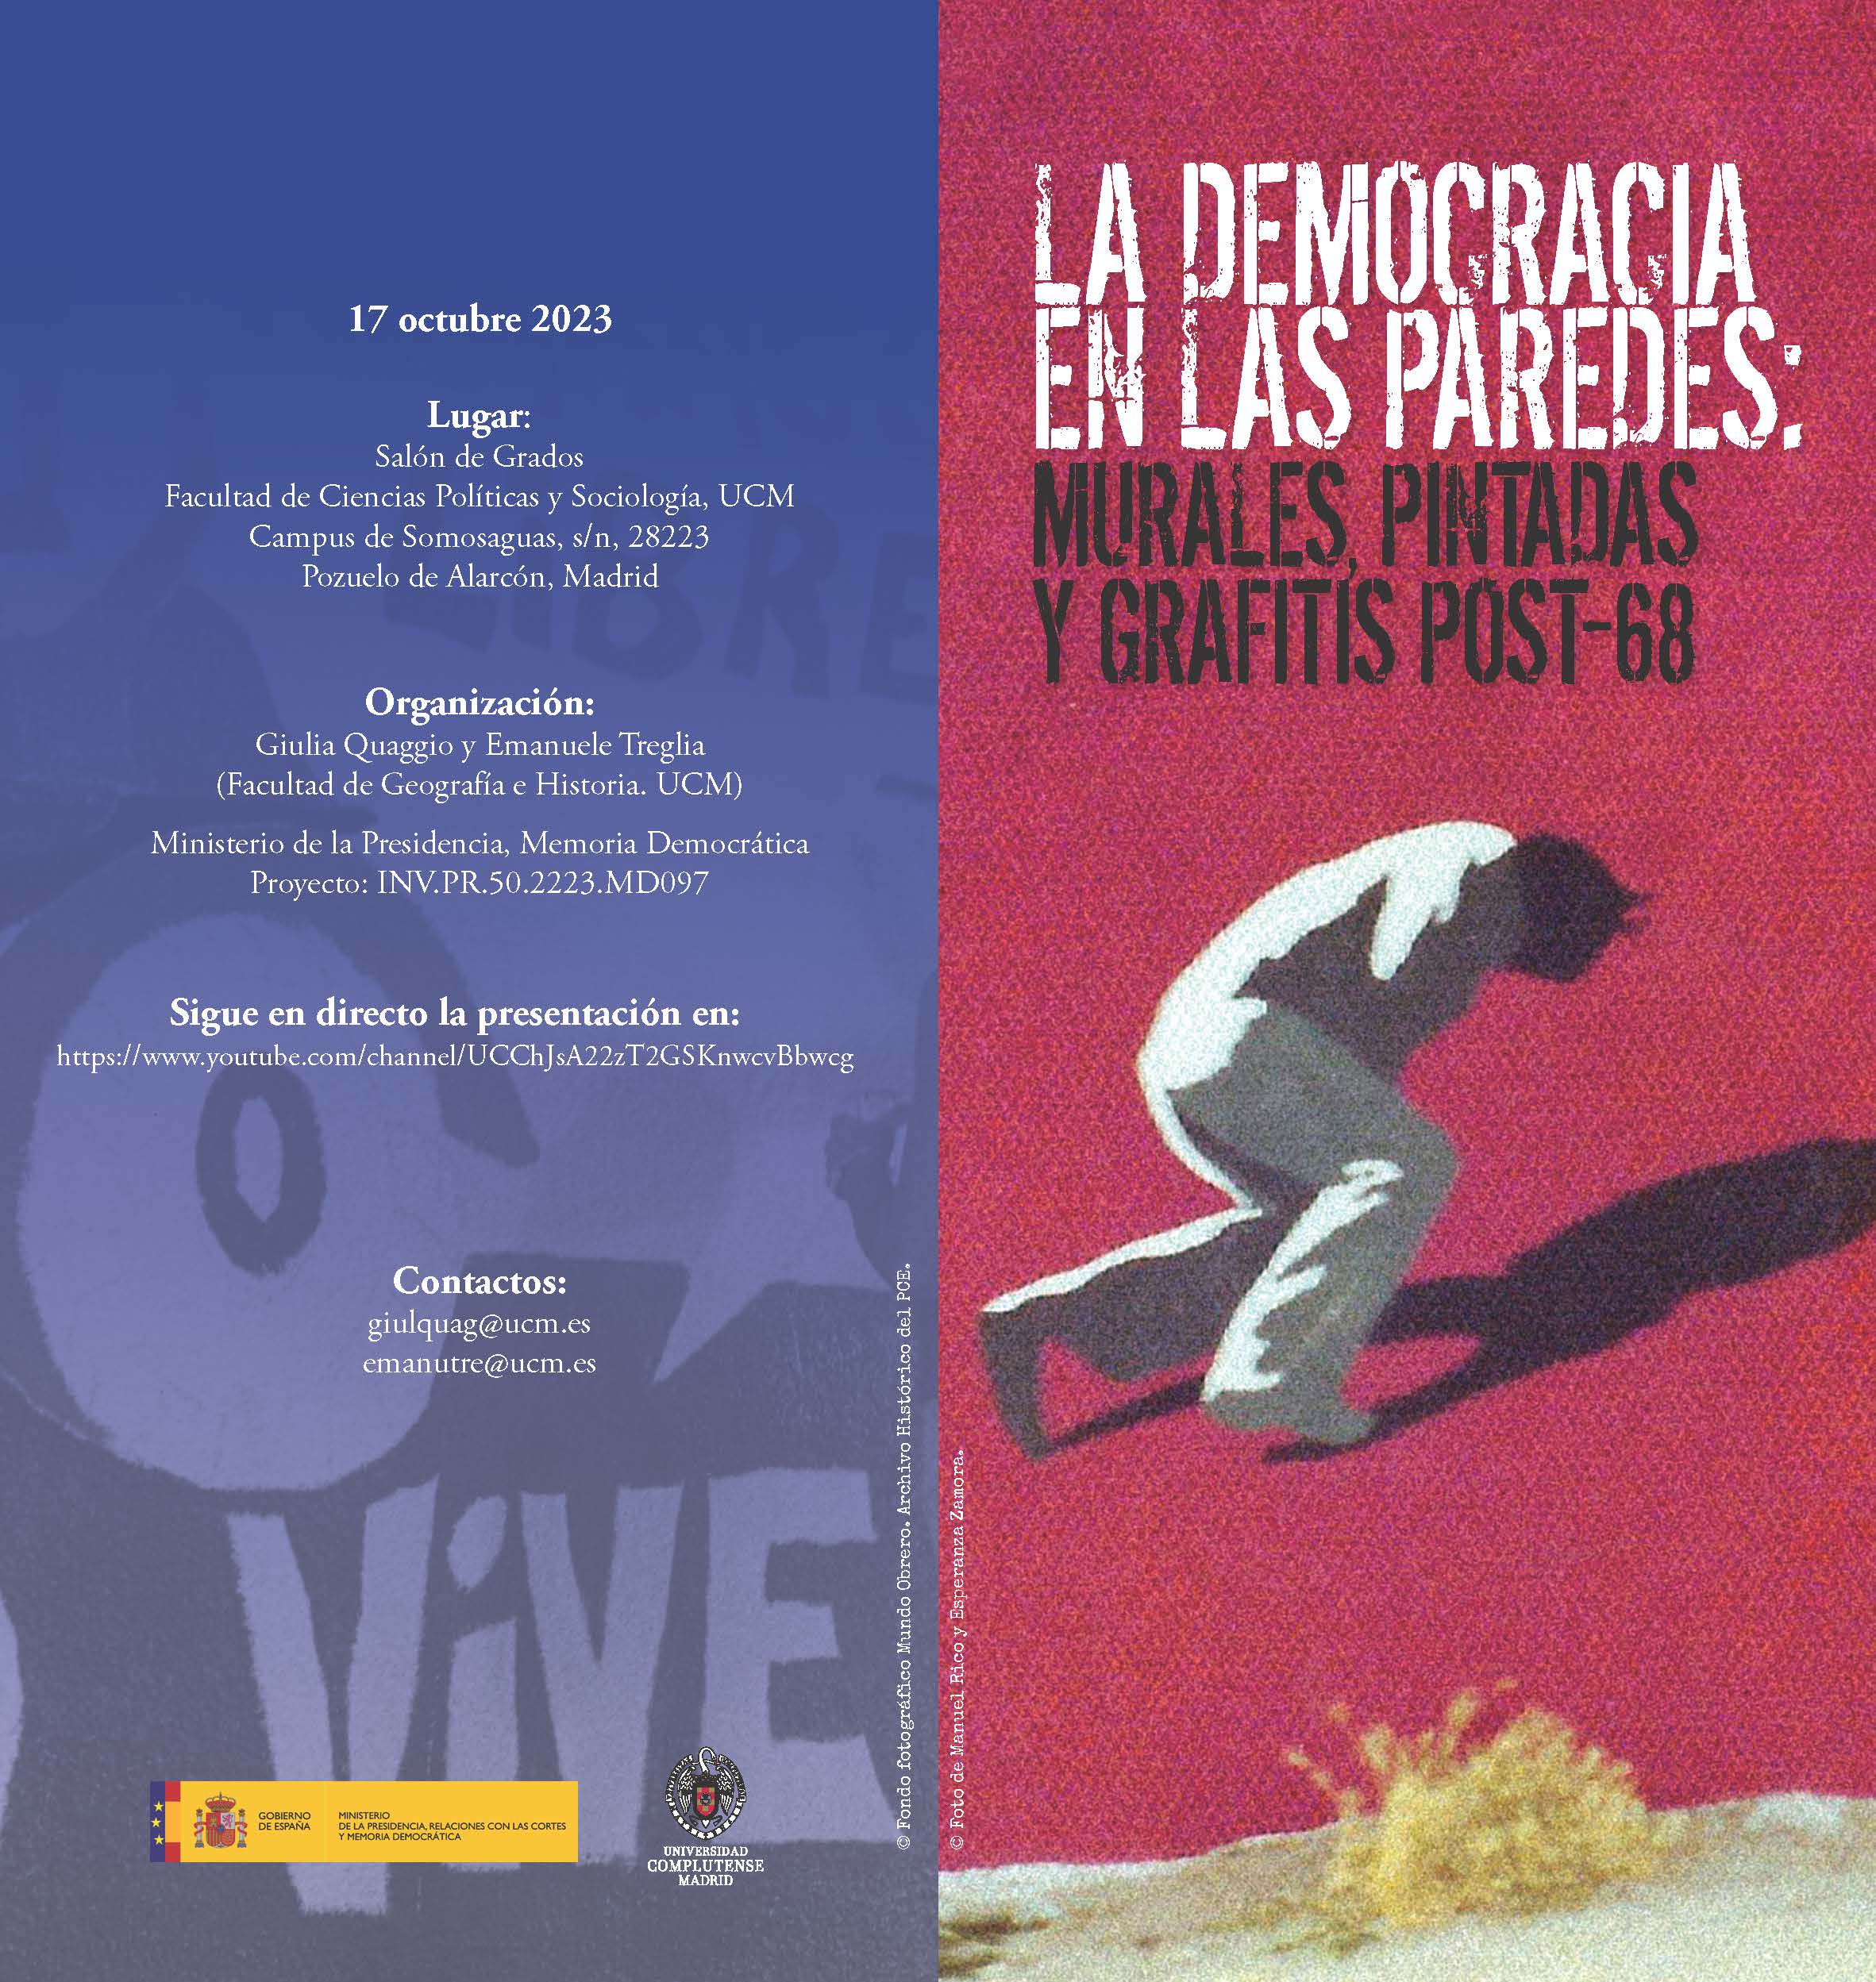 Seminario La Democracia en las paredes. Murales, pintadas y grafitis post-68 (17.10.2023) - Exposición (17.10-16.11.2023)